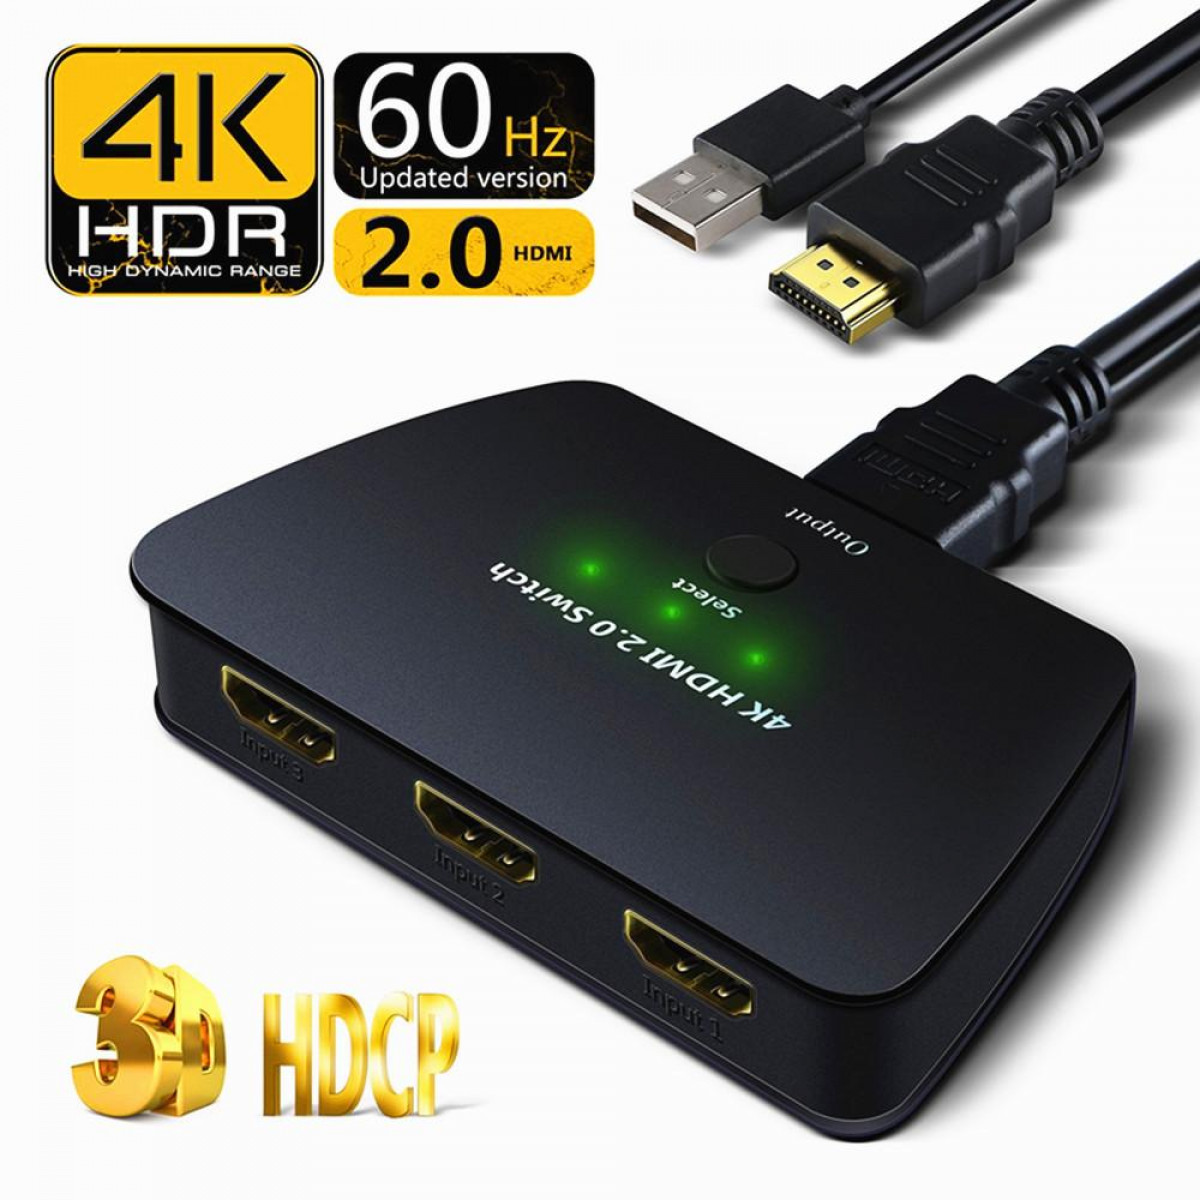 INF HDMI HDR, 4K (2160p) 3-1 und Switch Switch HDMI mit 3D